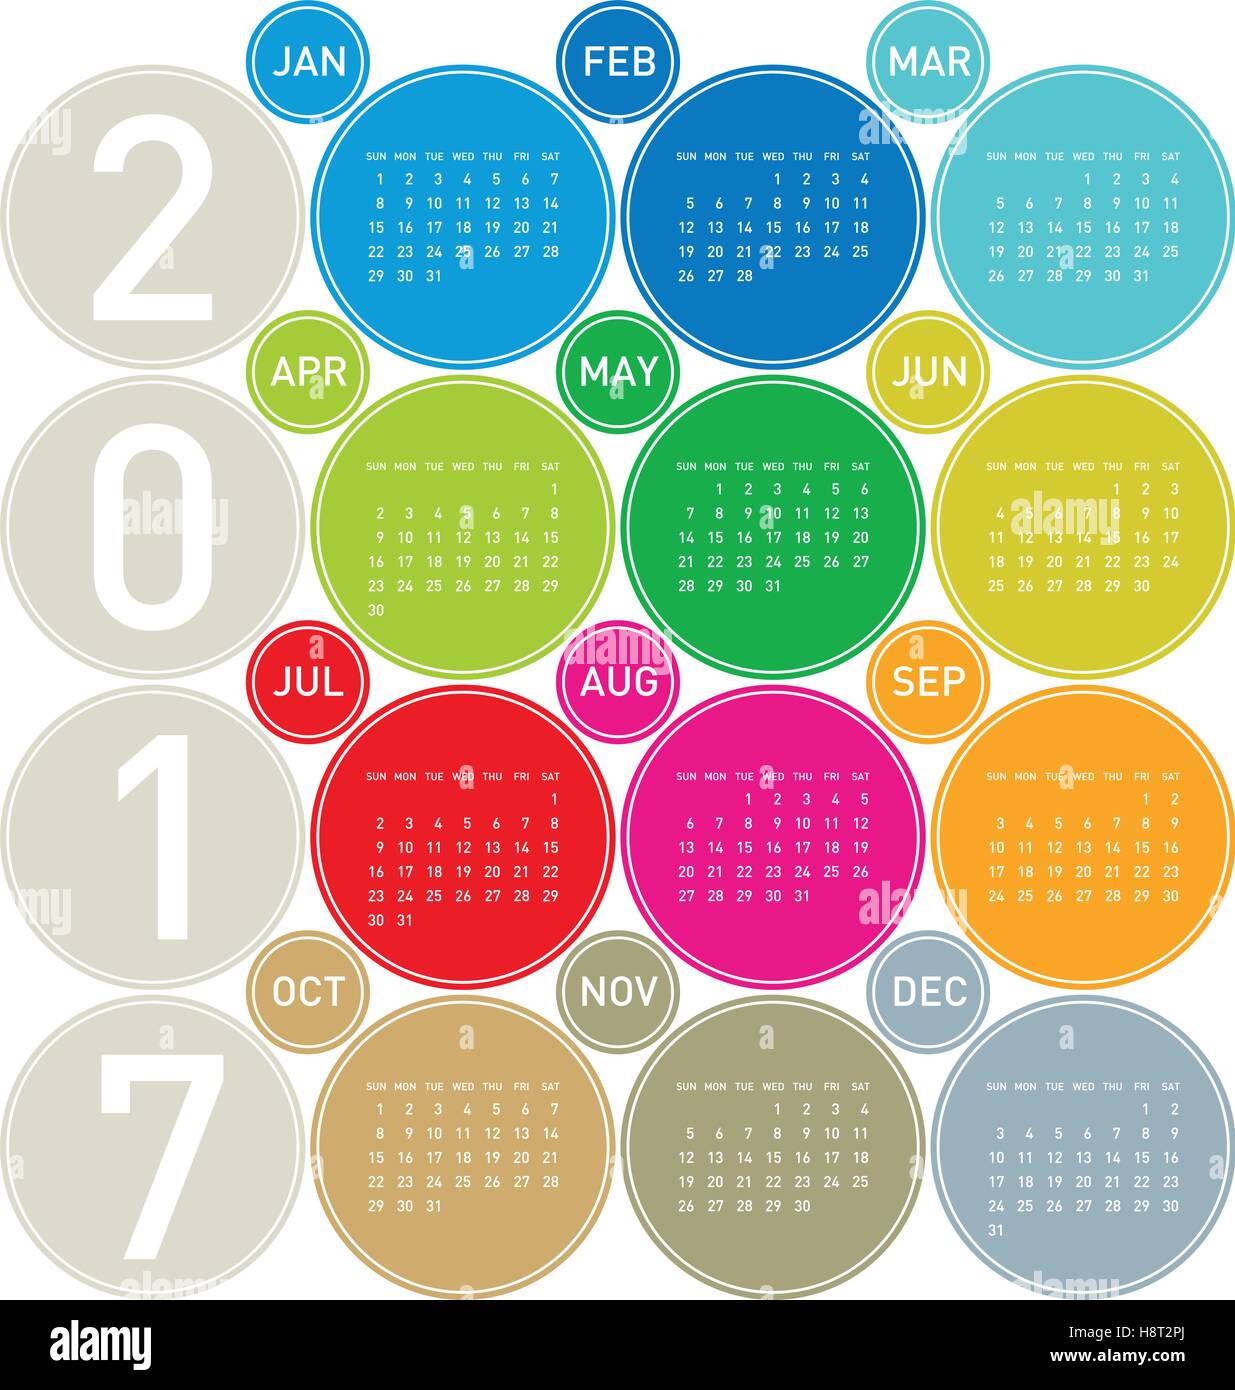 Calendario colorate per l'anno 2017 in un tema di circoli, in formato vettoriale. Illustrazione Vettoriale